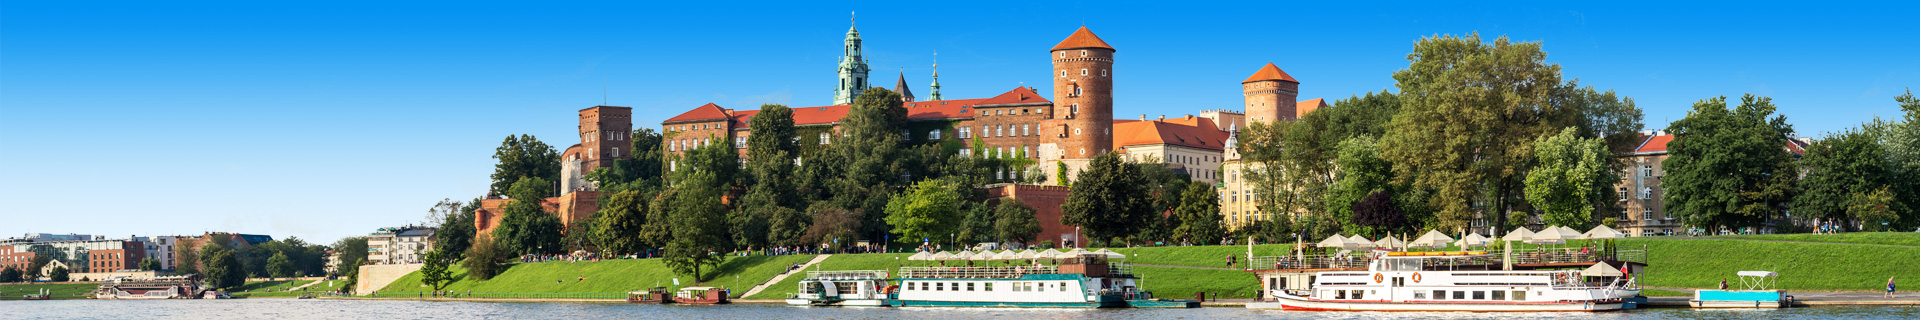 Uitzicht op gebouwen, een rivier en boot in Polen